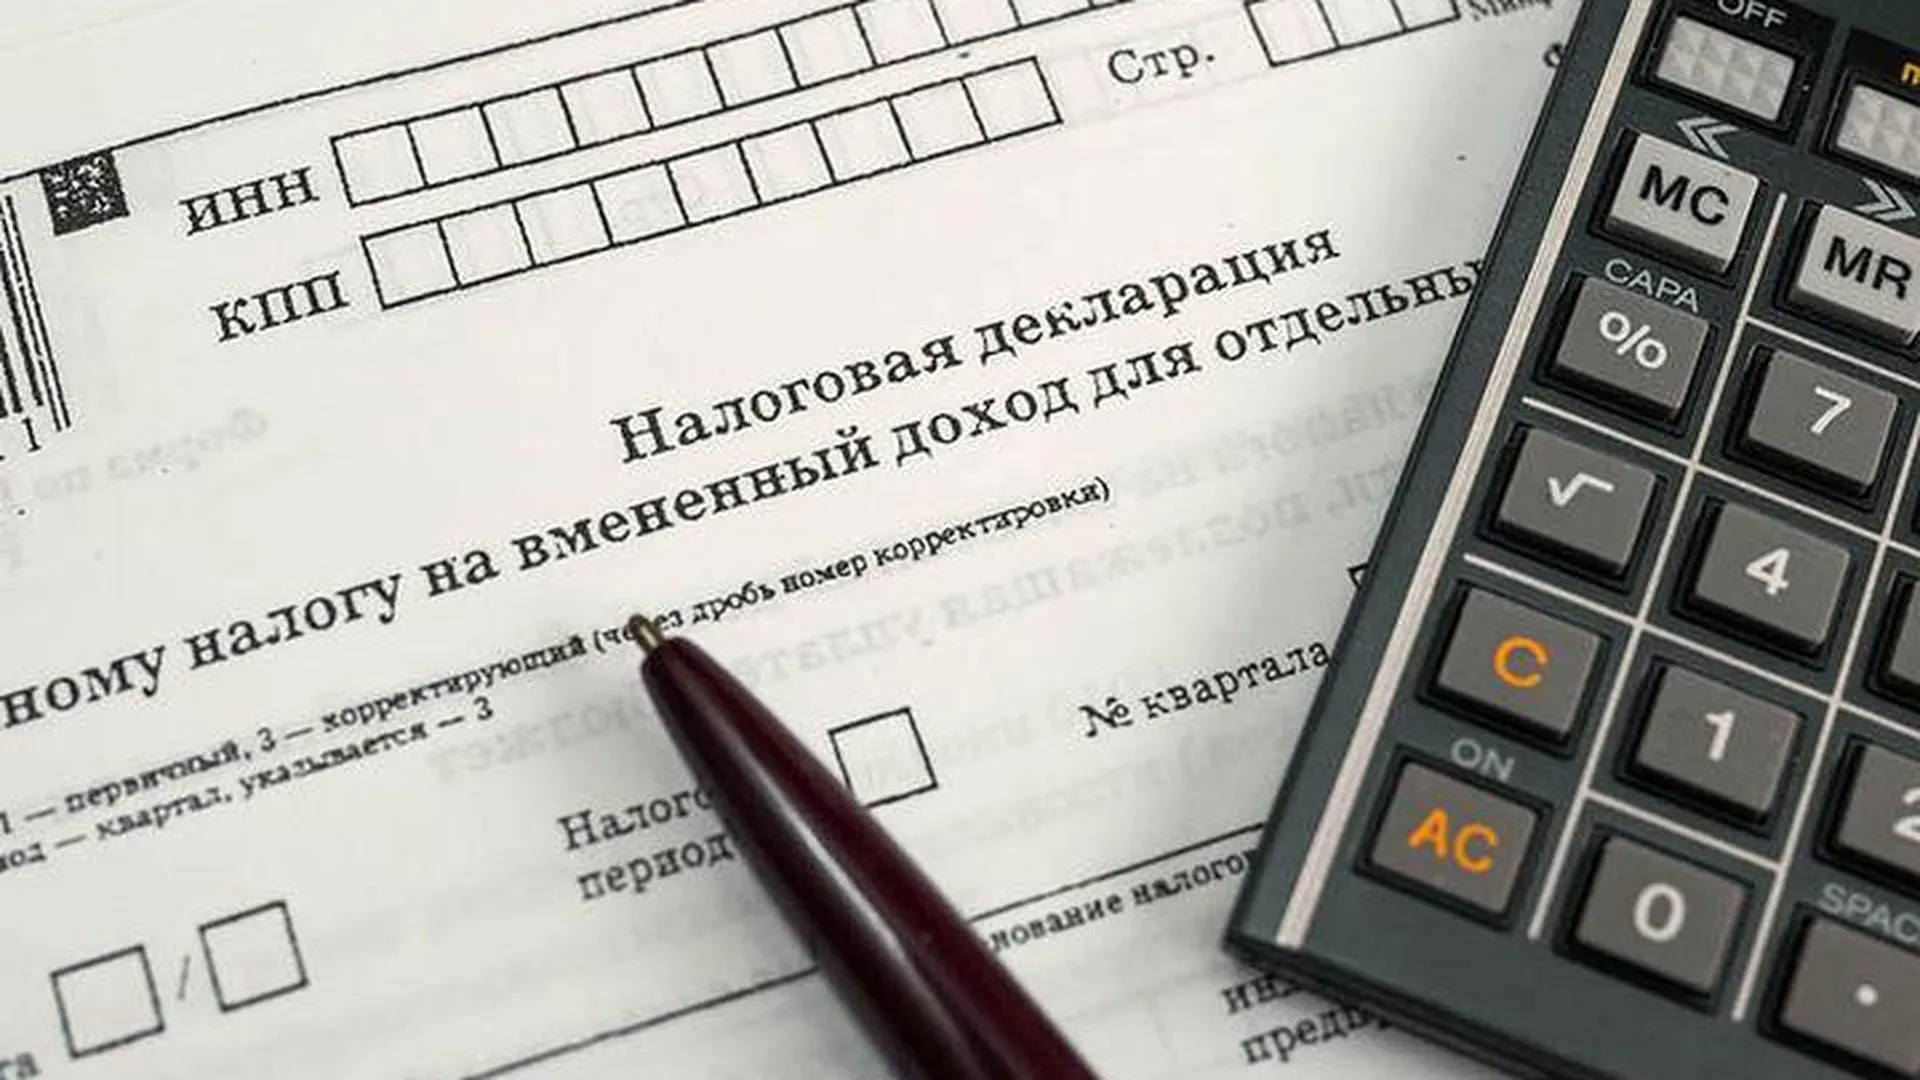 © пресс-службыа уполномоченного по защите прав предпринимателей в Московской области